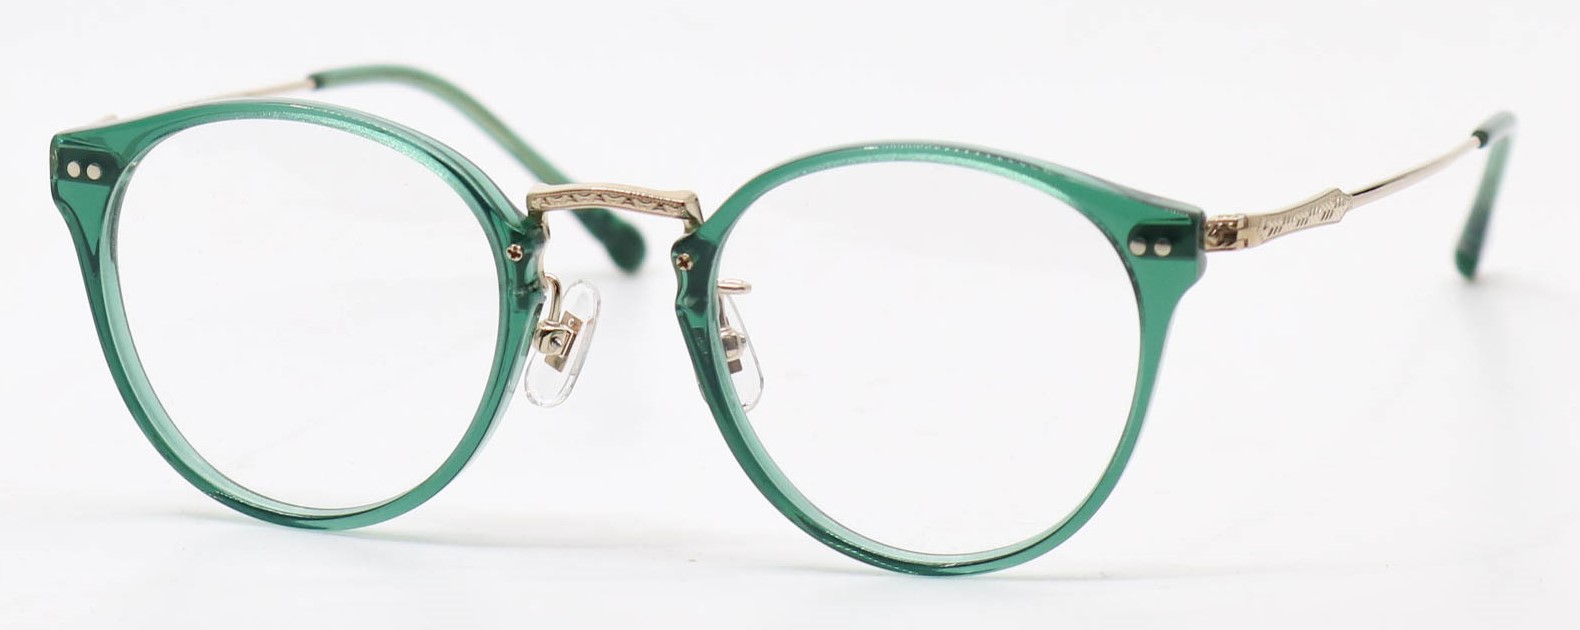 眼鏡のカラータイプC-5 Green/Gold